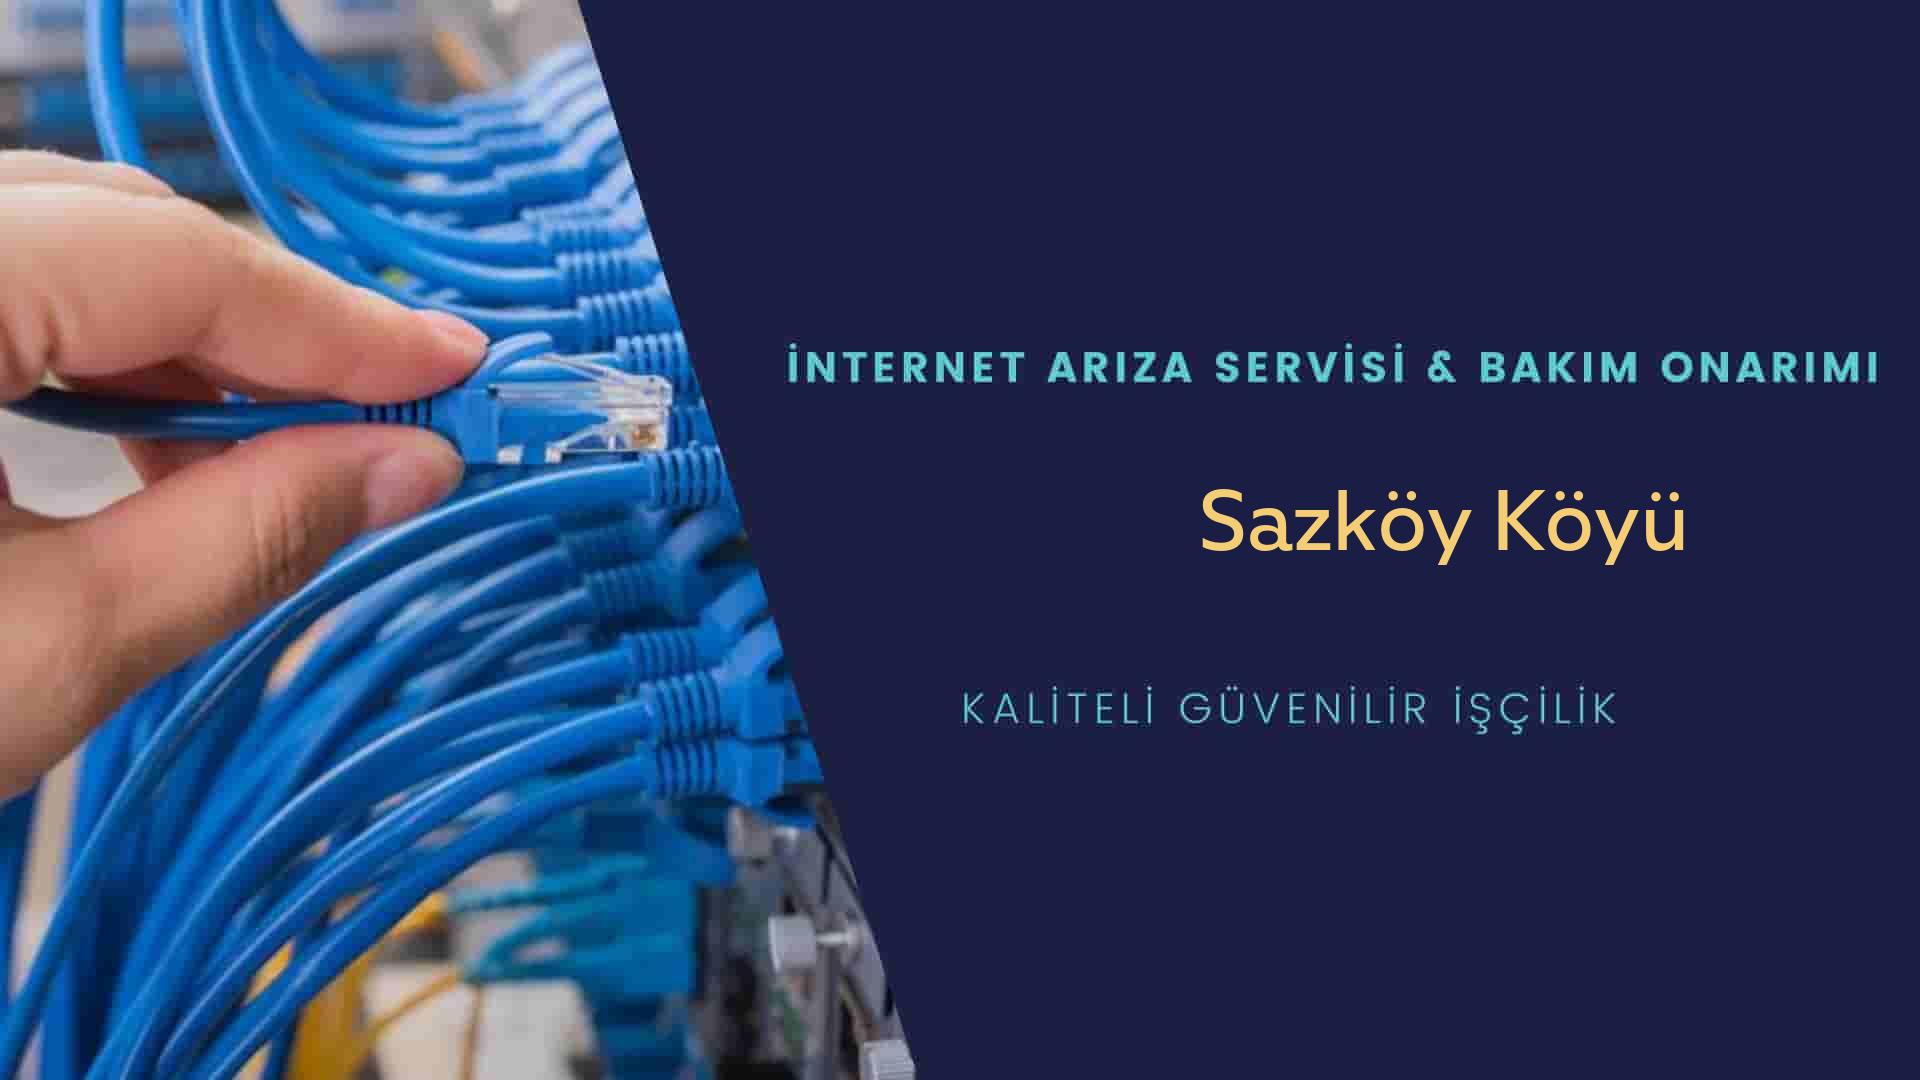 Sazköy Köyü internet kablosu çekimi yapan yerler veya elektrikçiler mi? arıyorsunuz doğru yerdesiniz o zaman sizlere 7/24 yardımcı olacak profesyonel ustalarımız bir telefon kadar yakındır size.